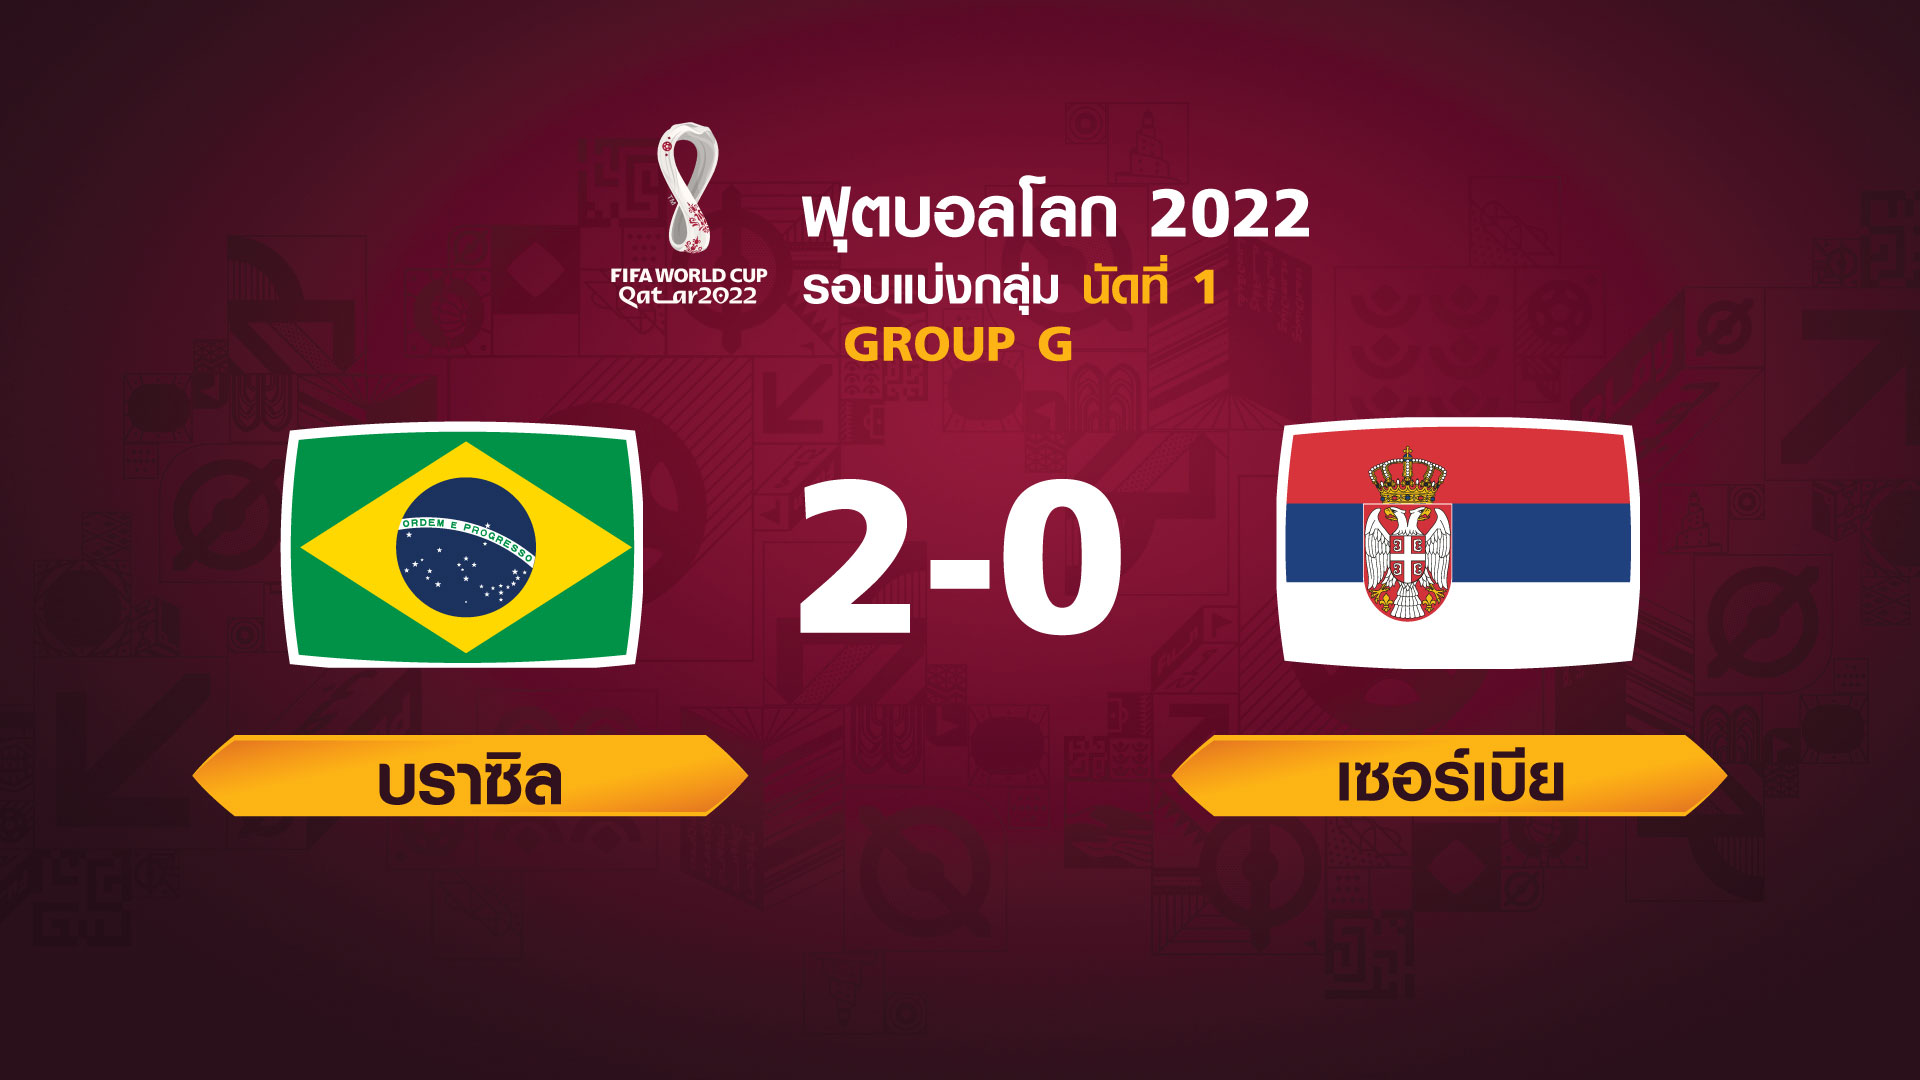 ฟุตบอลโลก 2022 รอบแบ่งกลุ่ม นัดแรก ระหว่าง Brazil vs Serbia